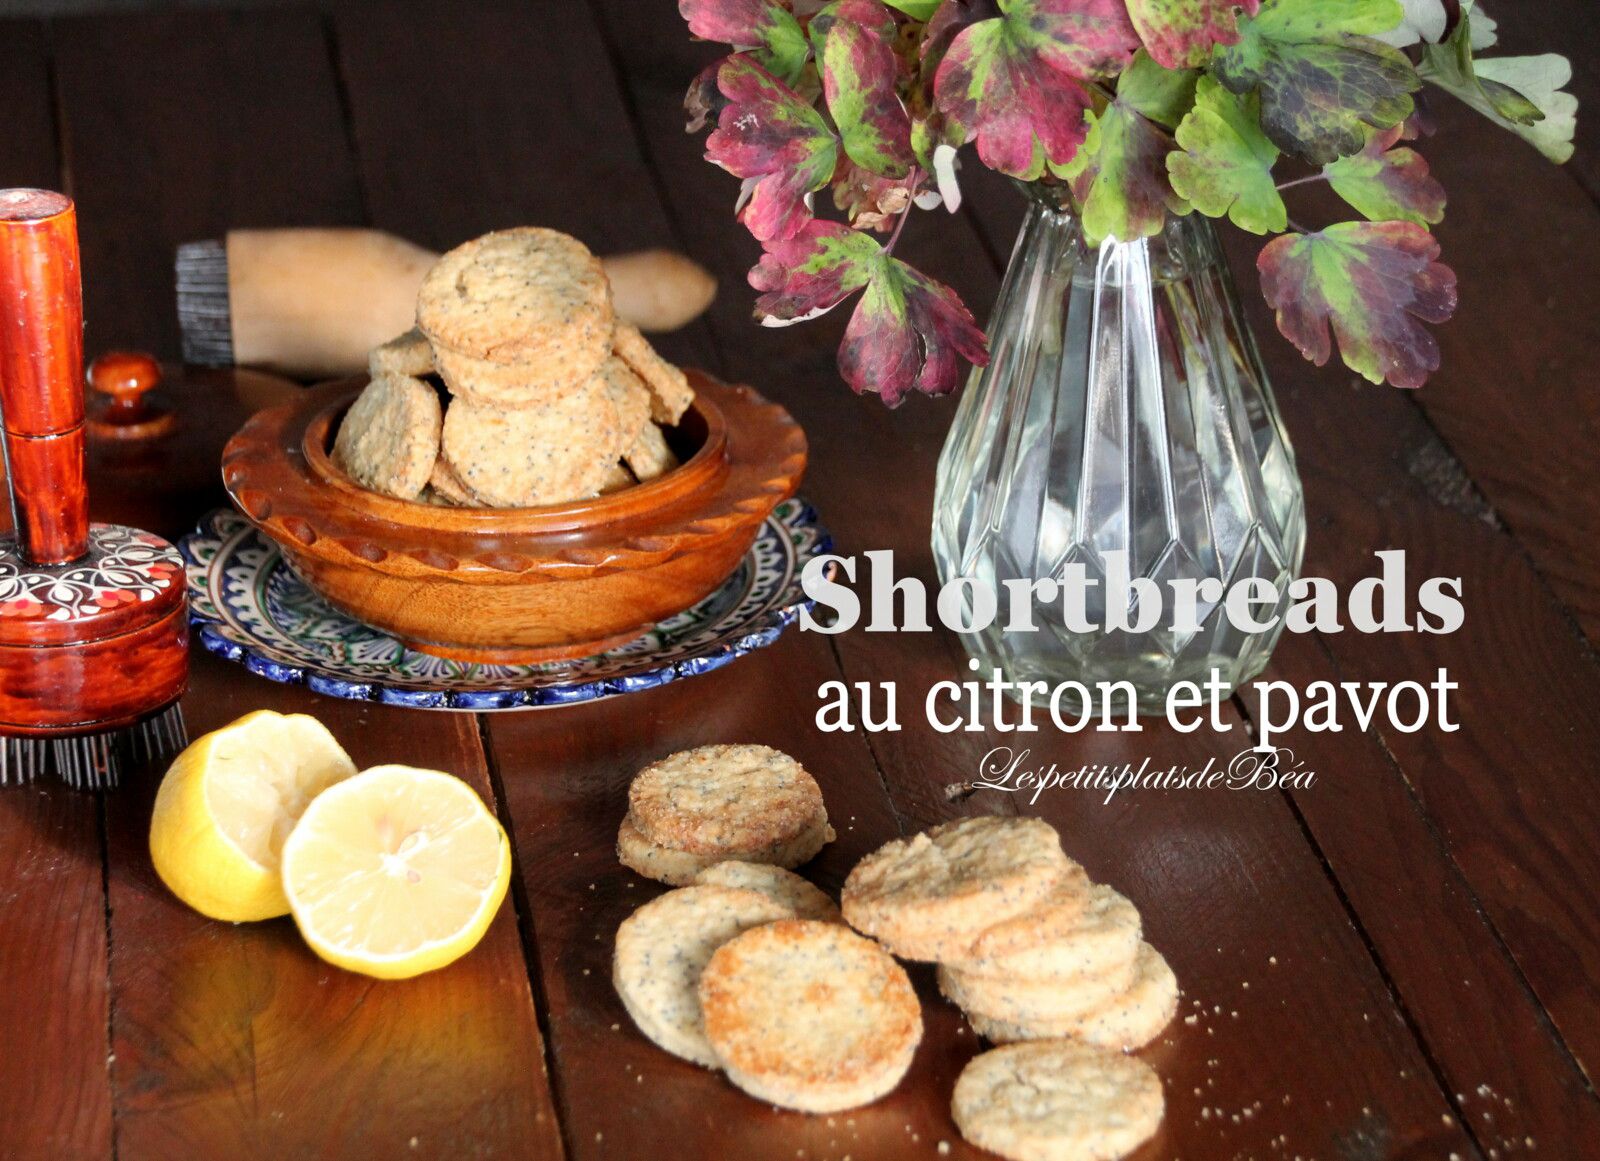 Shortbreads au citron et pavot